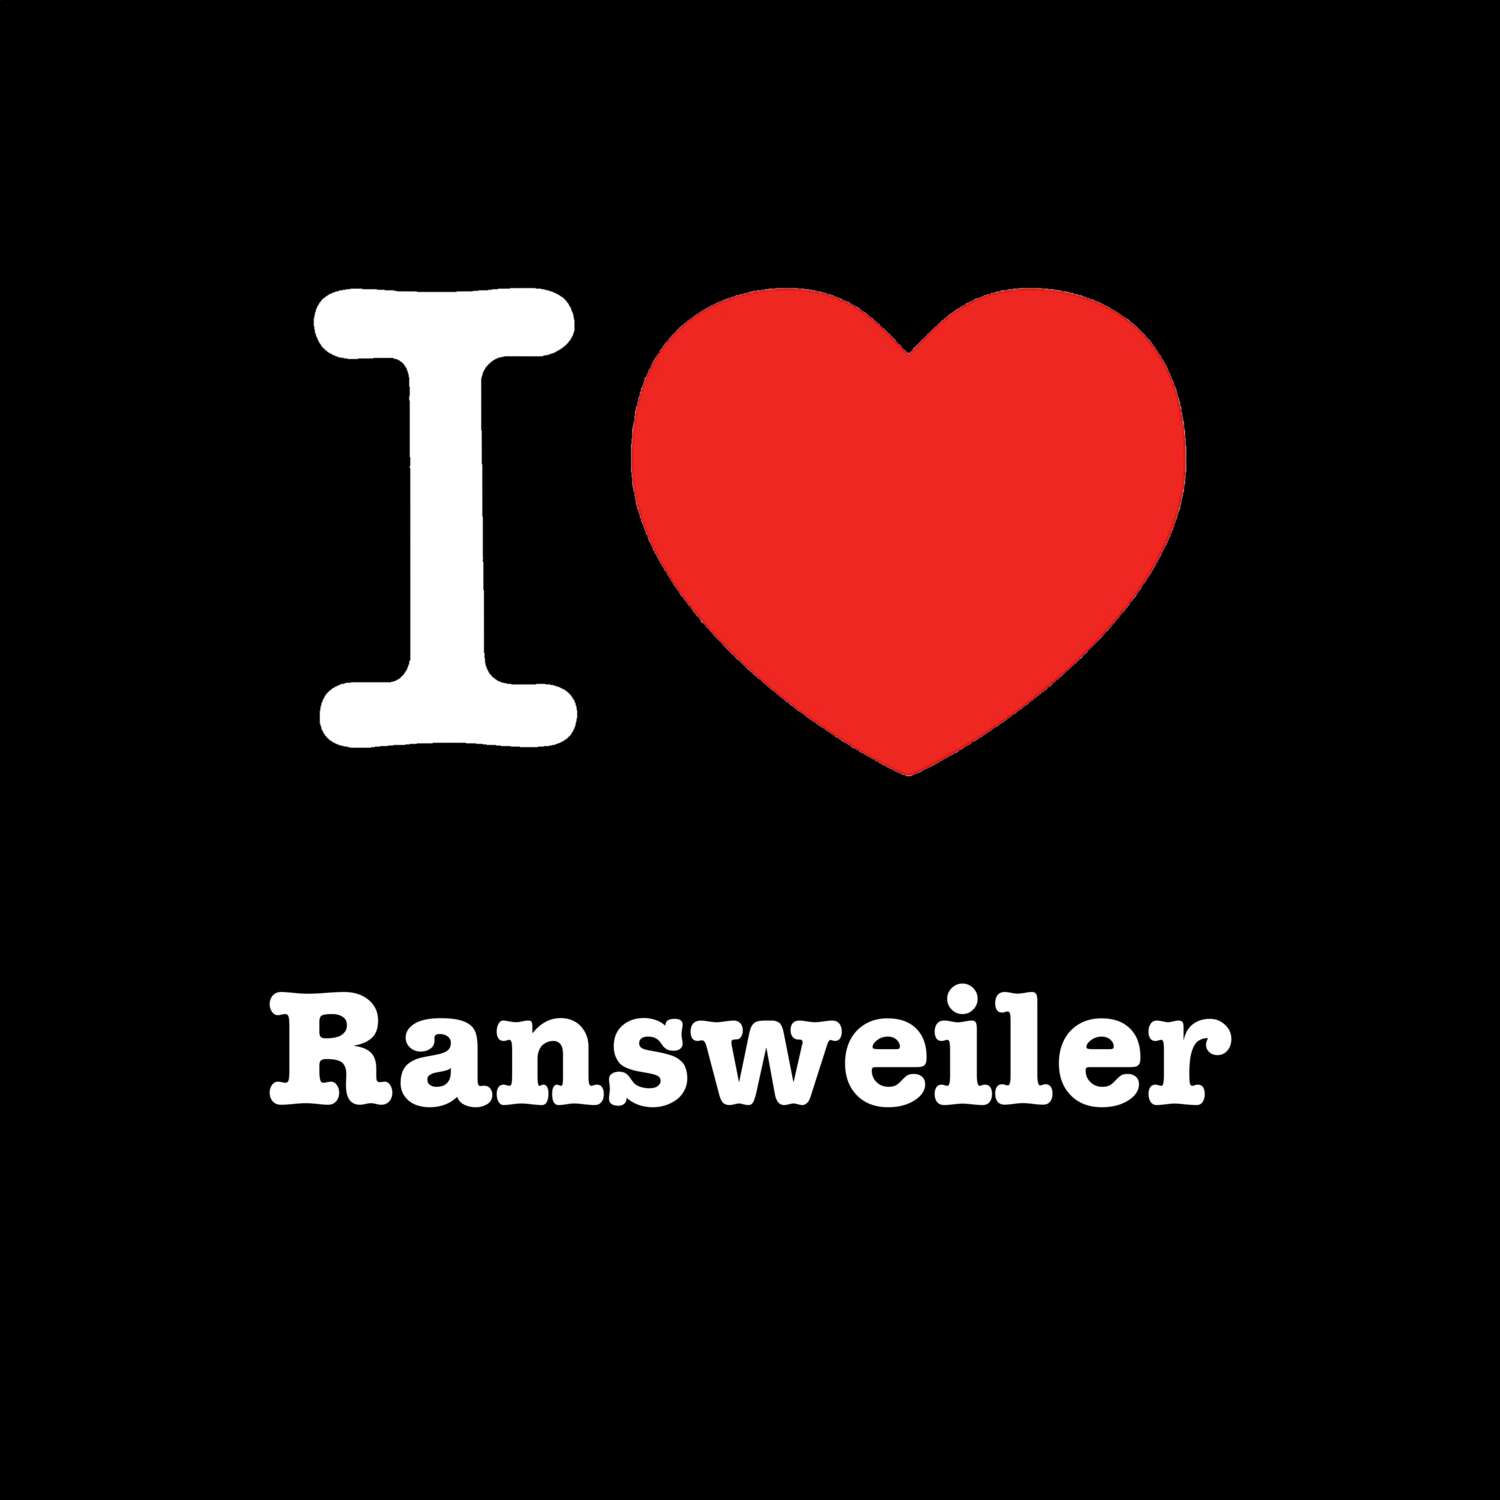 Ransweiler T-Shirt »I love«